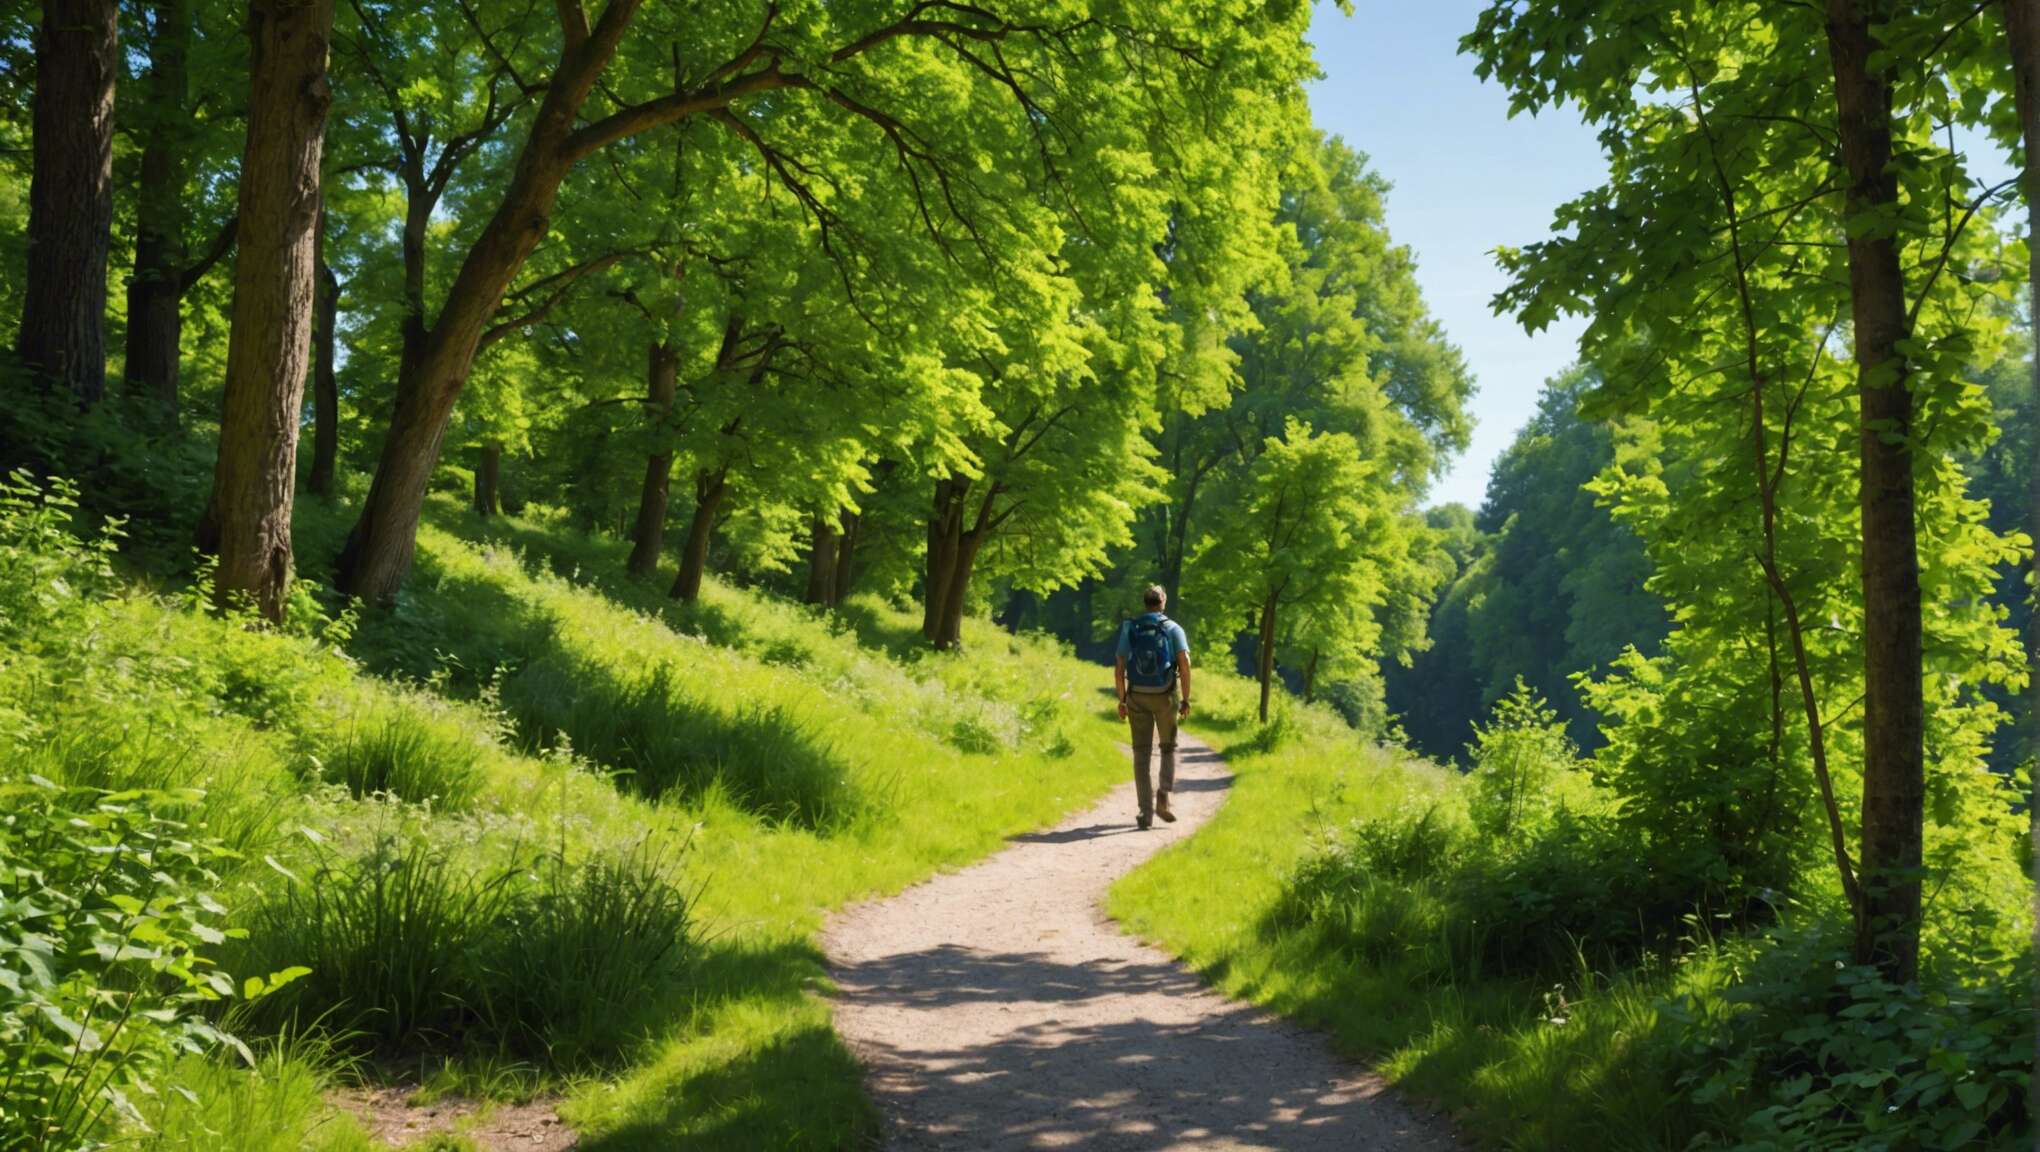 Comment profiter au mieux d'une randonnée à l'Arboretum de la Vallée aux Loups ?